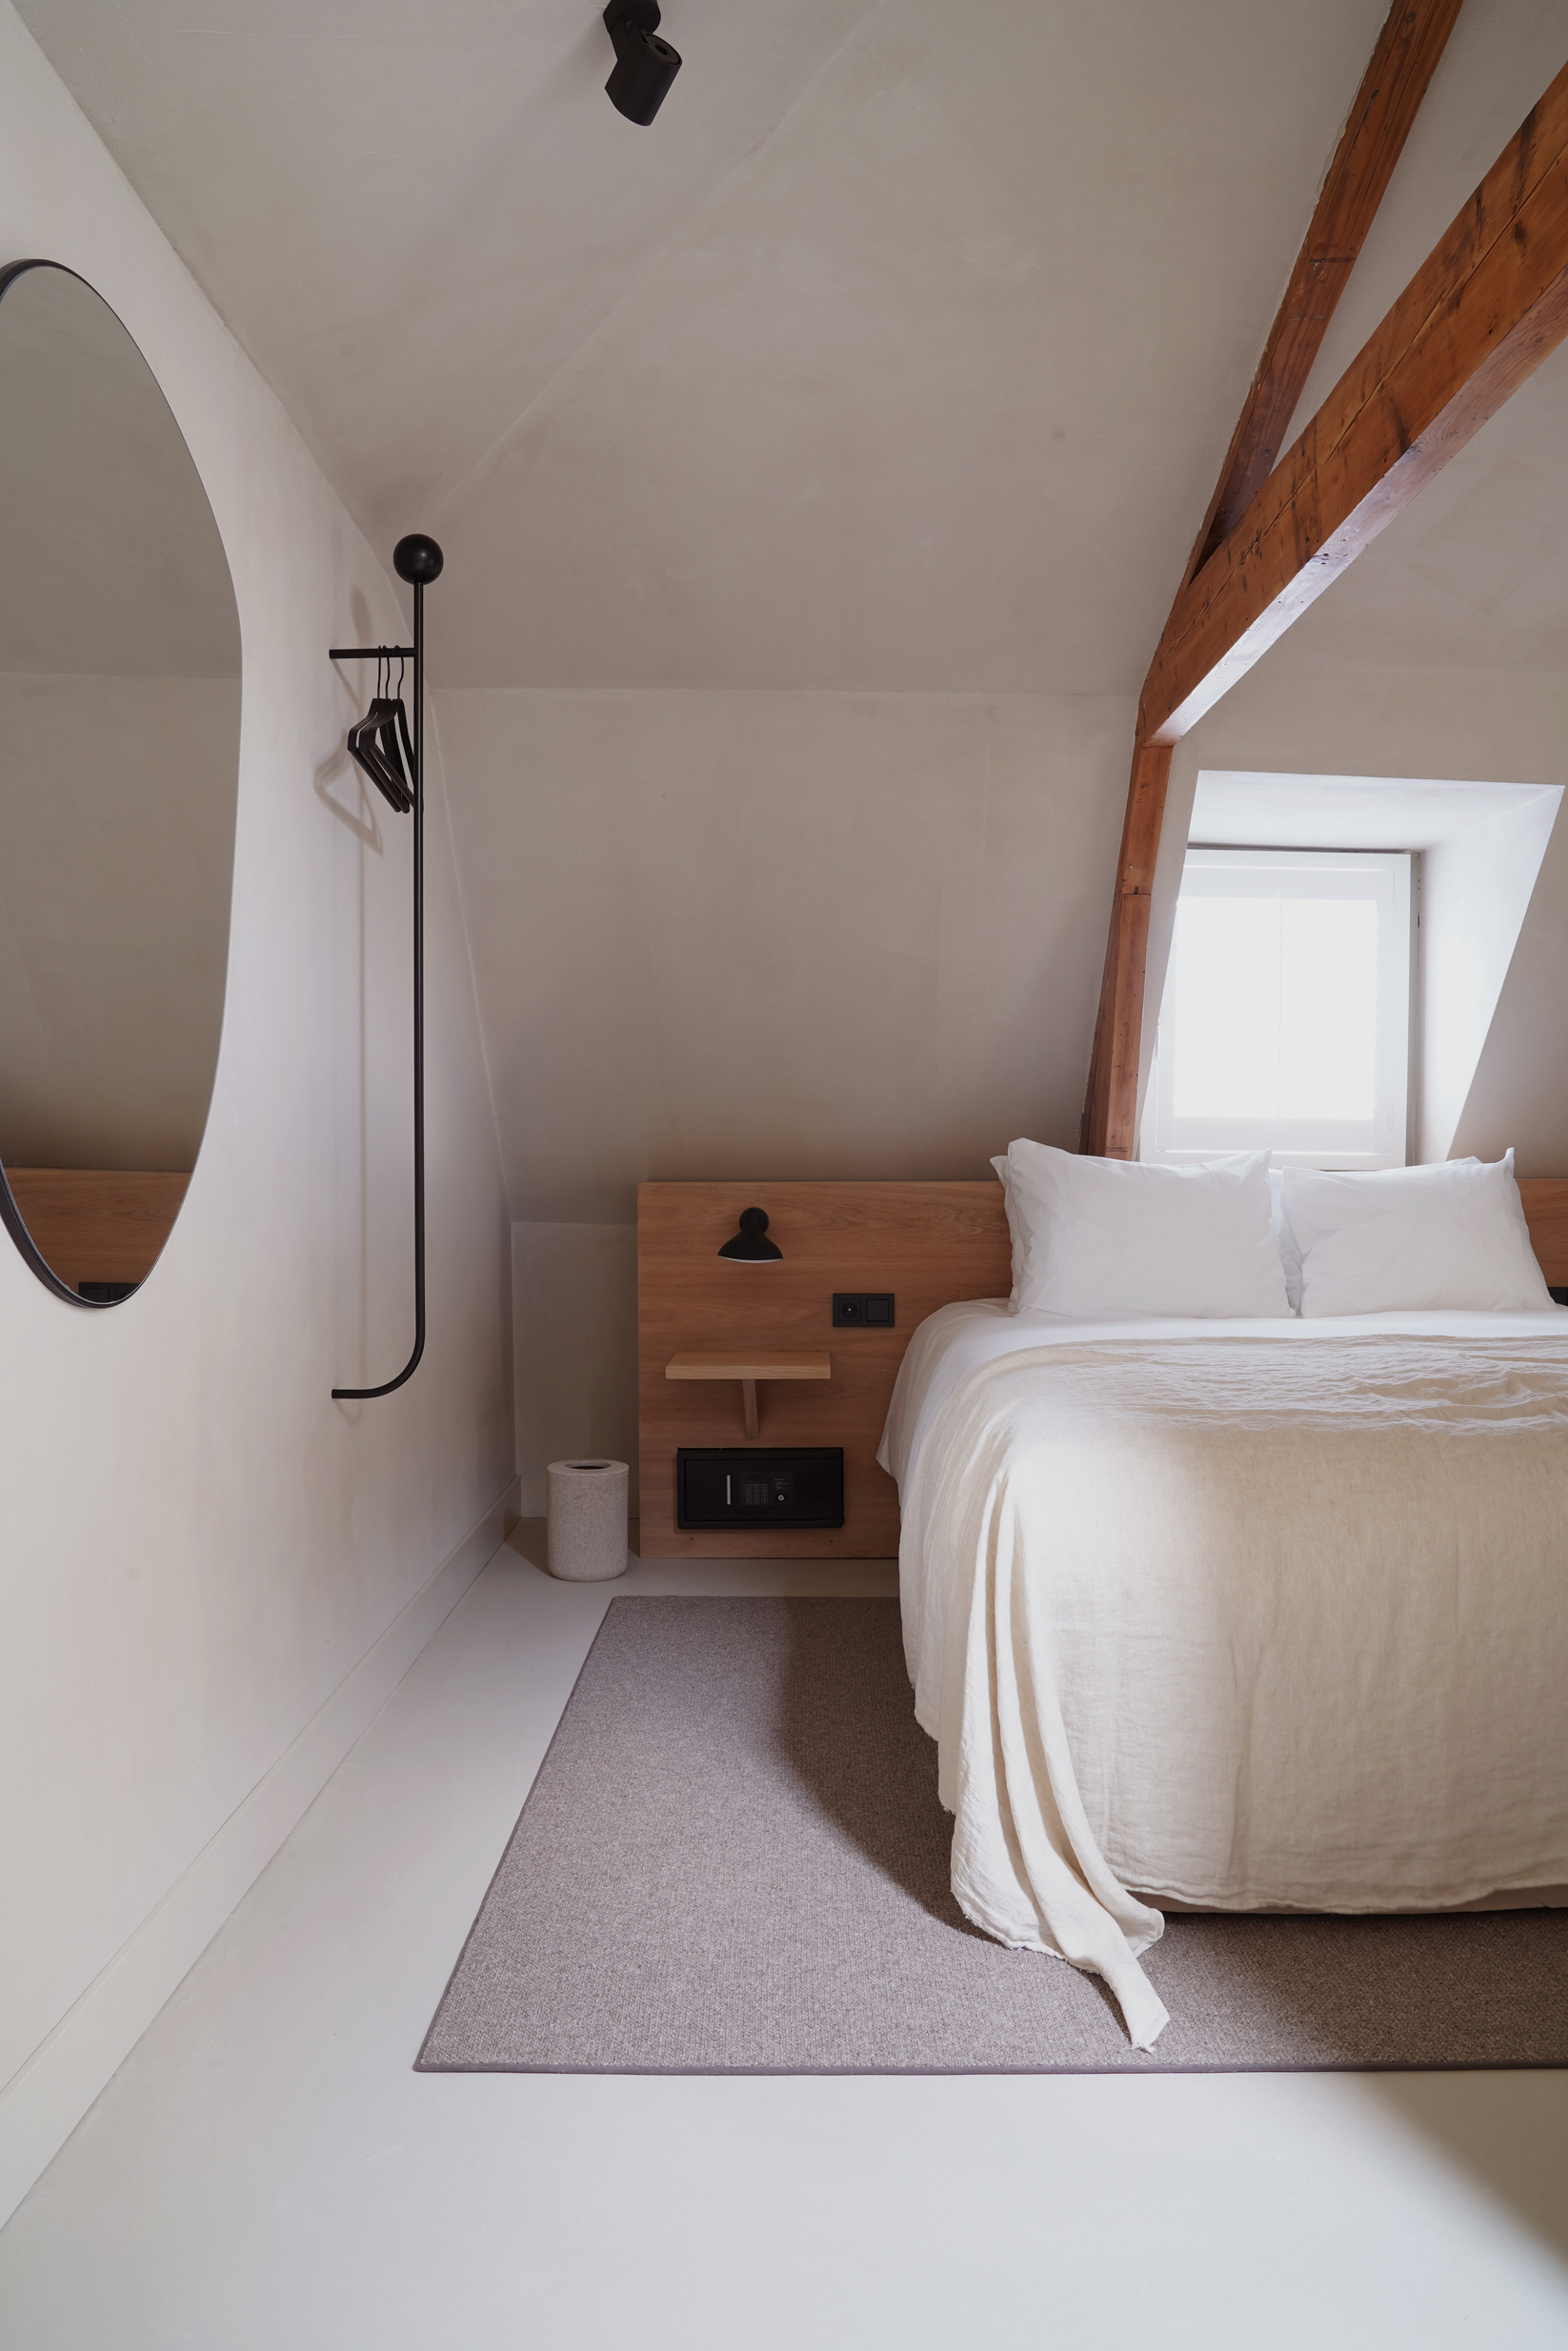 Dit is de cosy room van Hotel âme in Rotterdam, waar gekozen is voor een microcement vloer, wanden én plafond | Bron: Hotelame.com